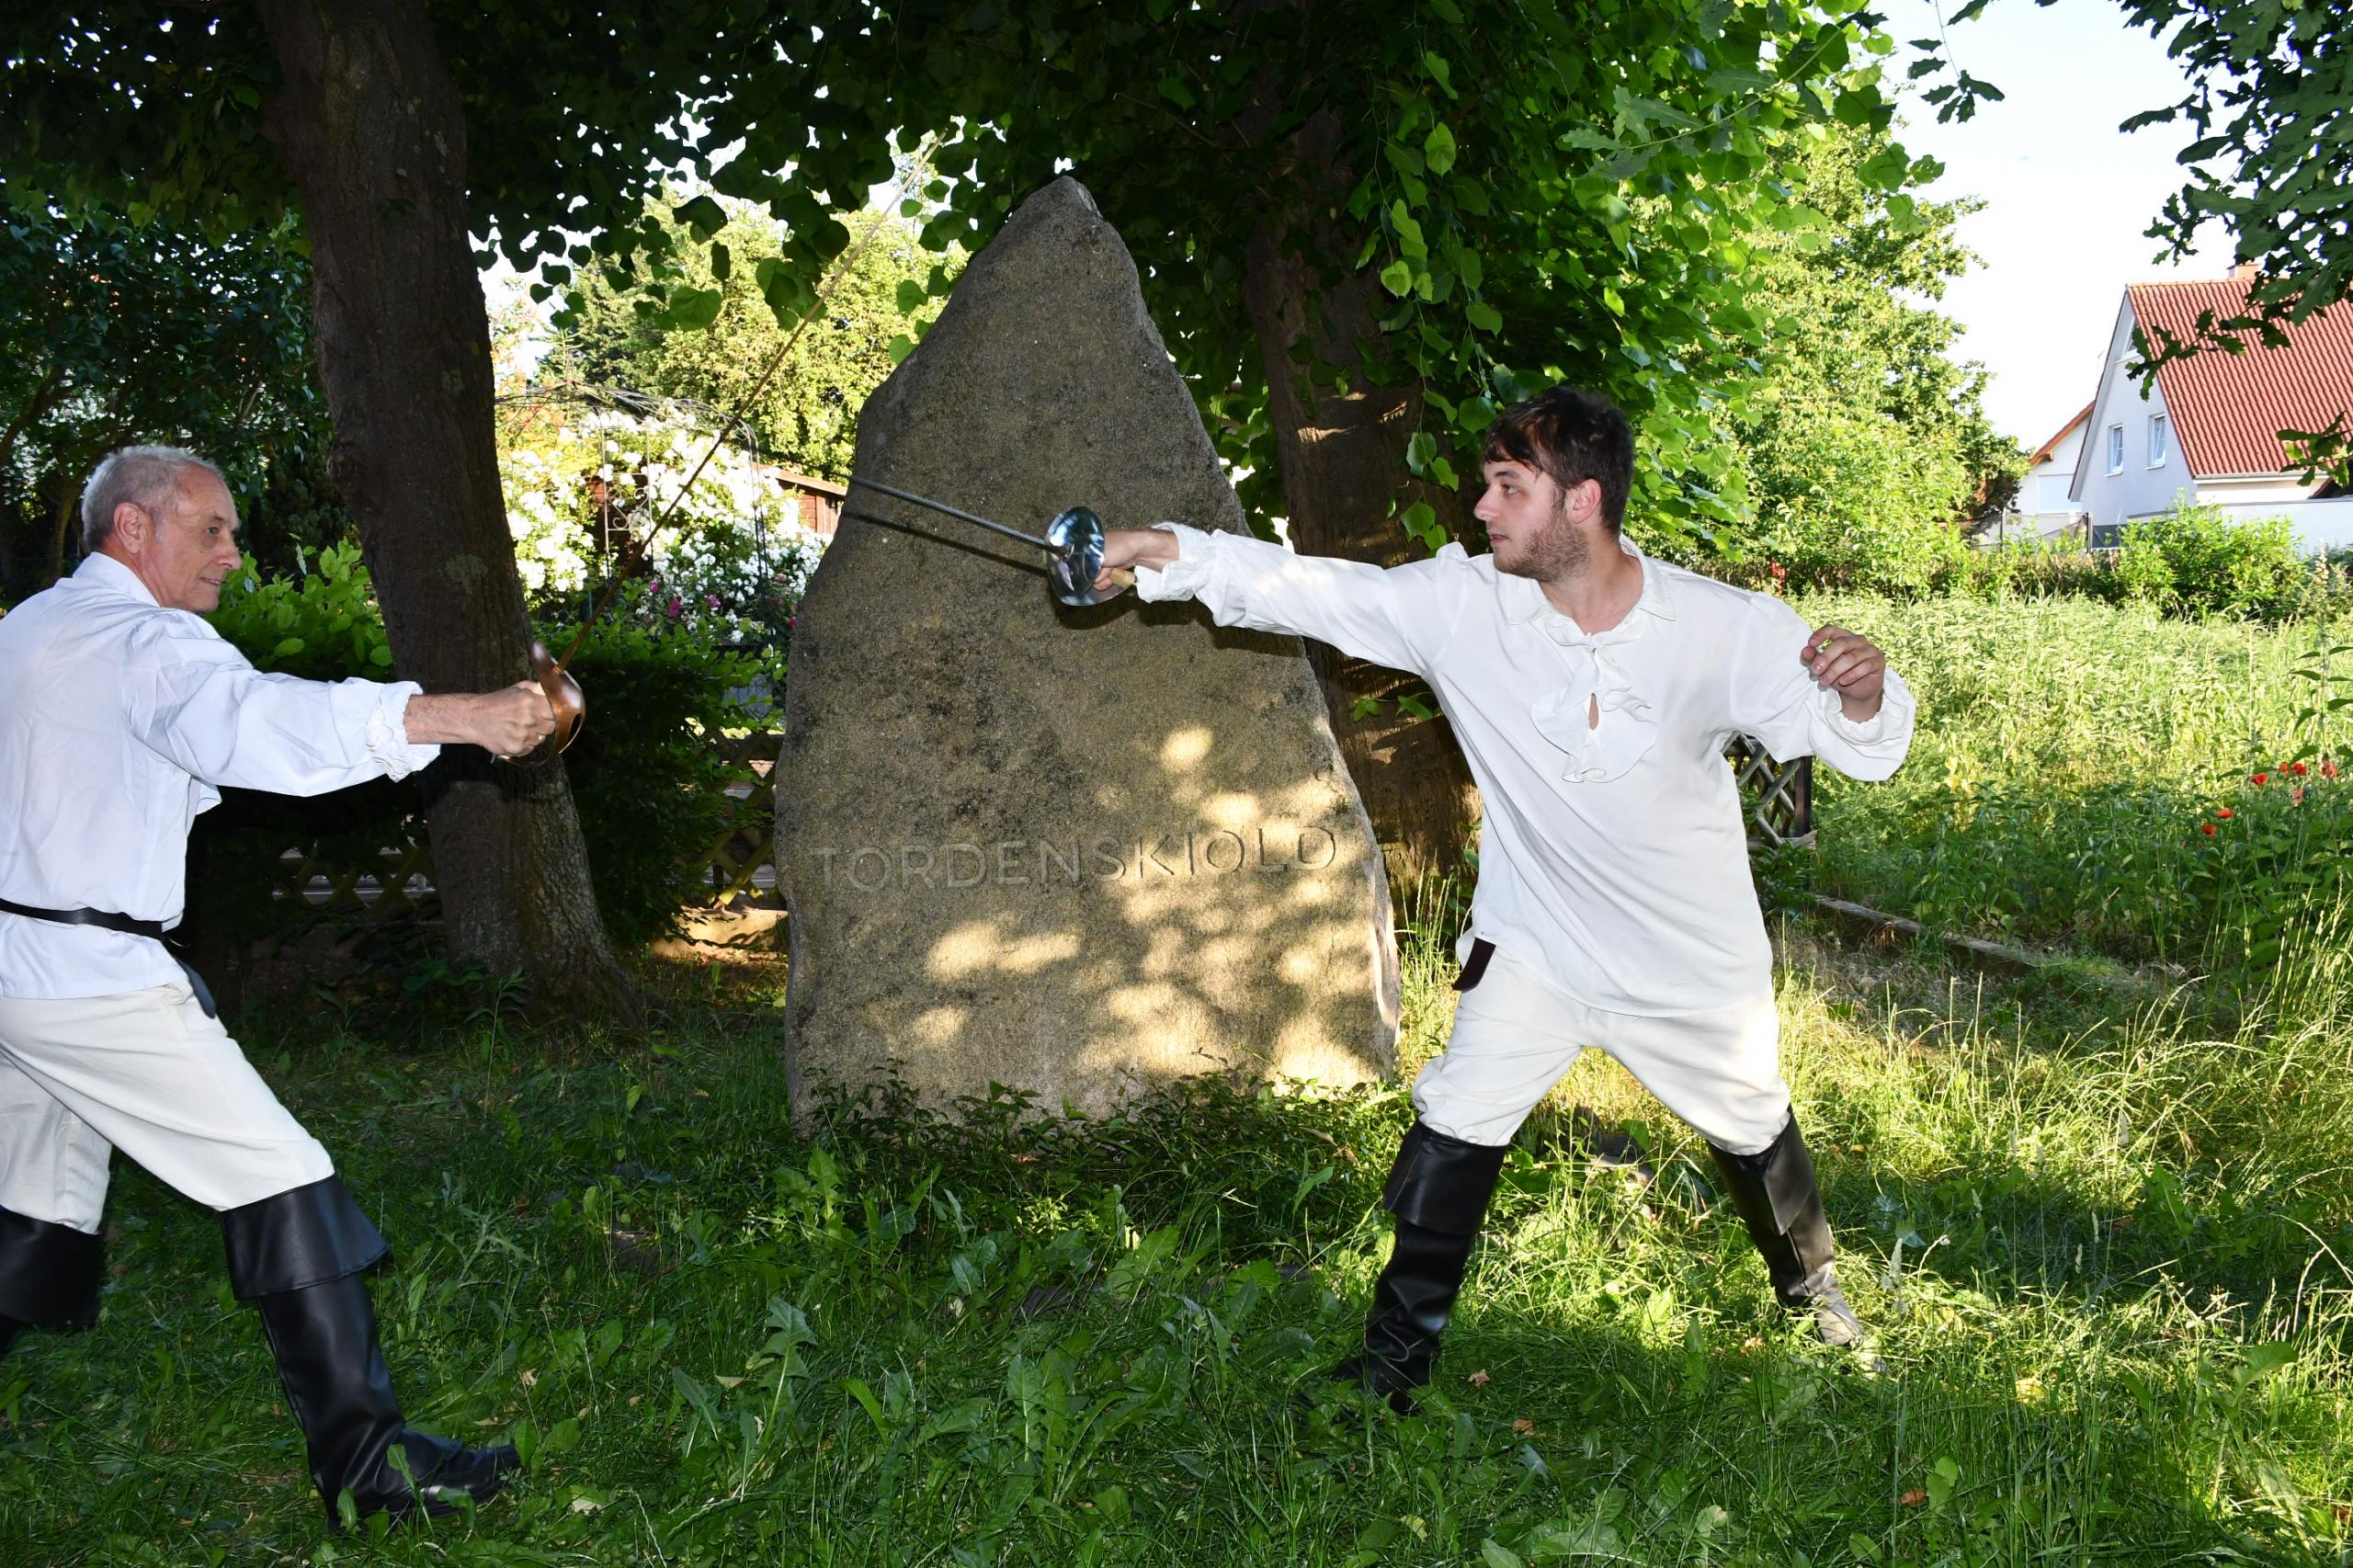 Zwei Männer in altertümlichen Gewändern duellieren sich vor dem Tordenskiold-Gedenkstein.